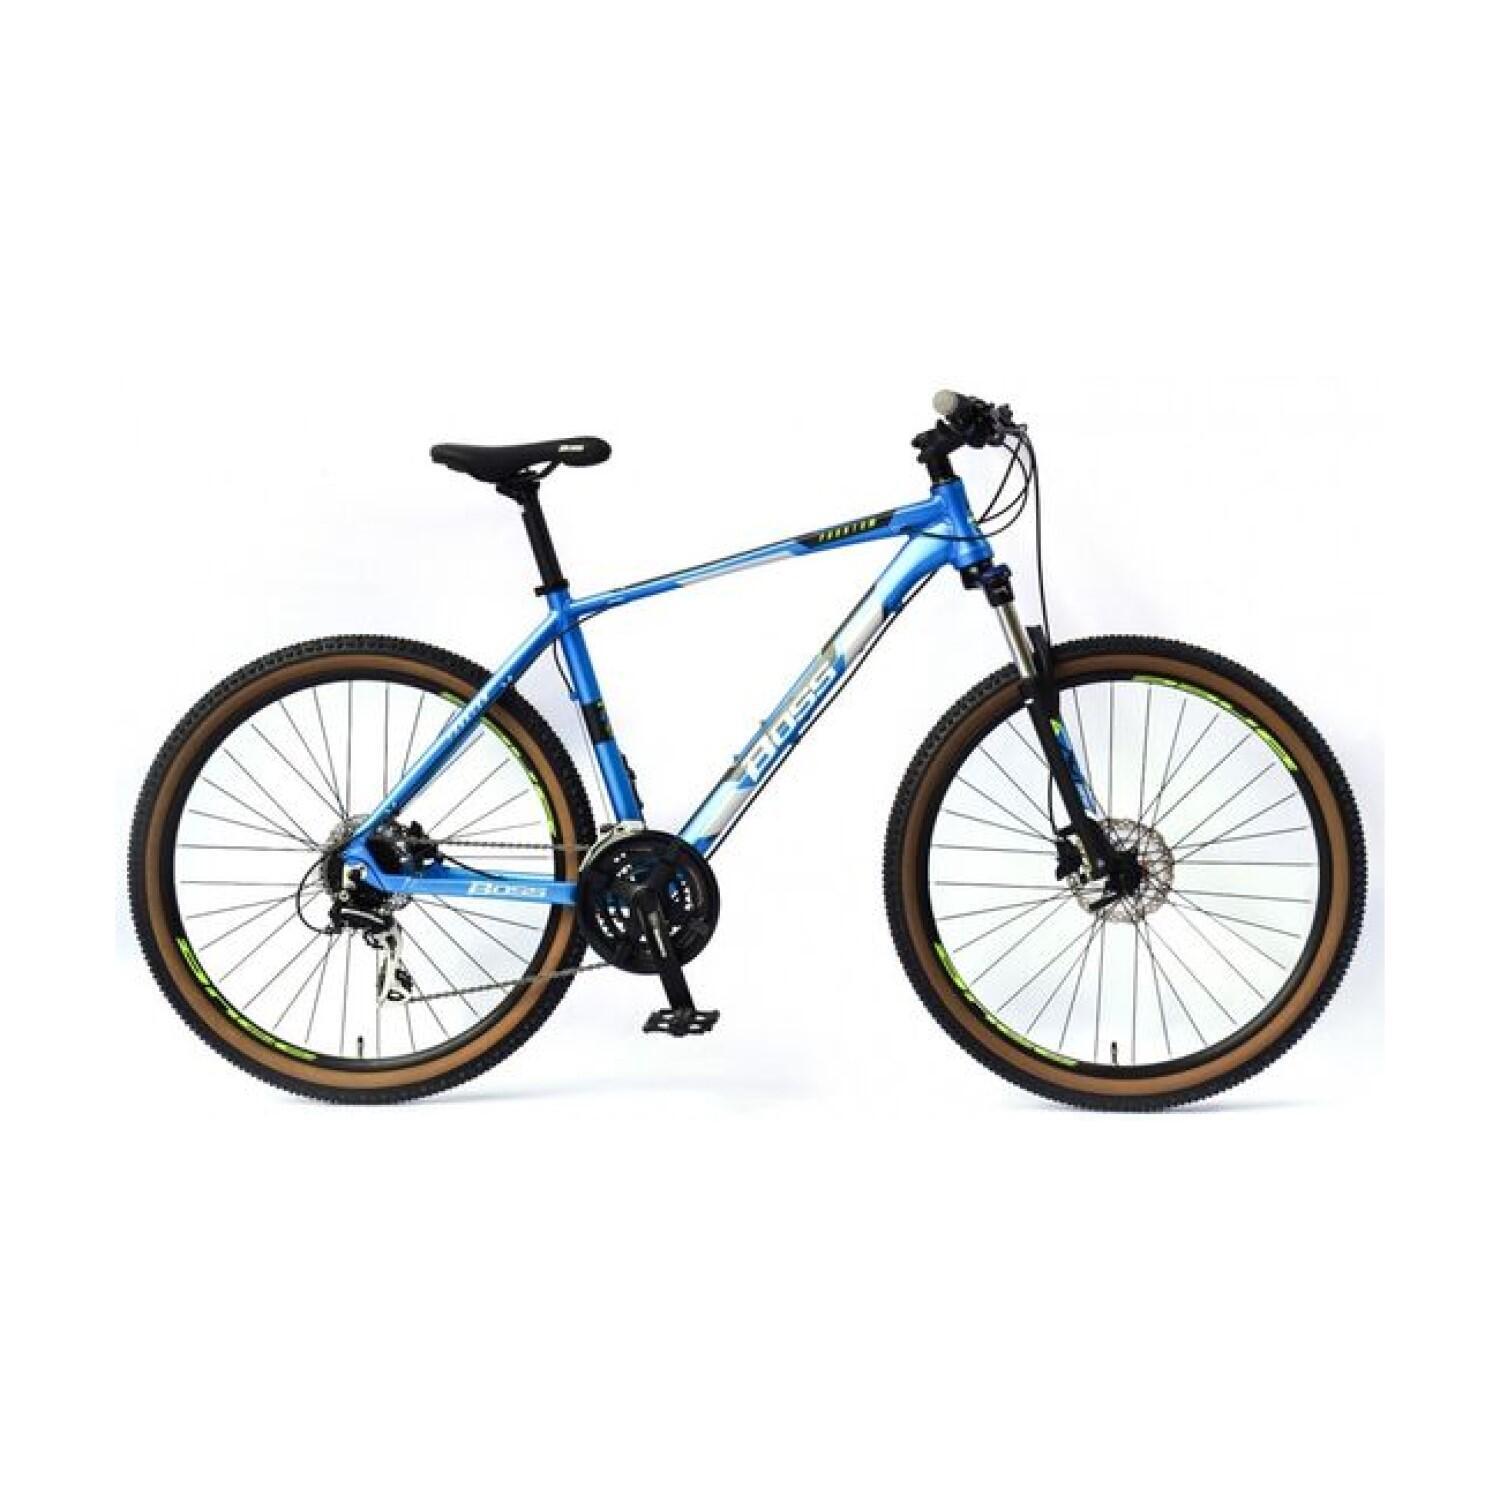 Boss Phantom Mens Hardtail Mountain Bike 27.5in Wheel - Satin Blue 1/1